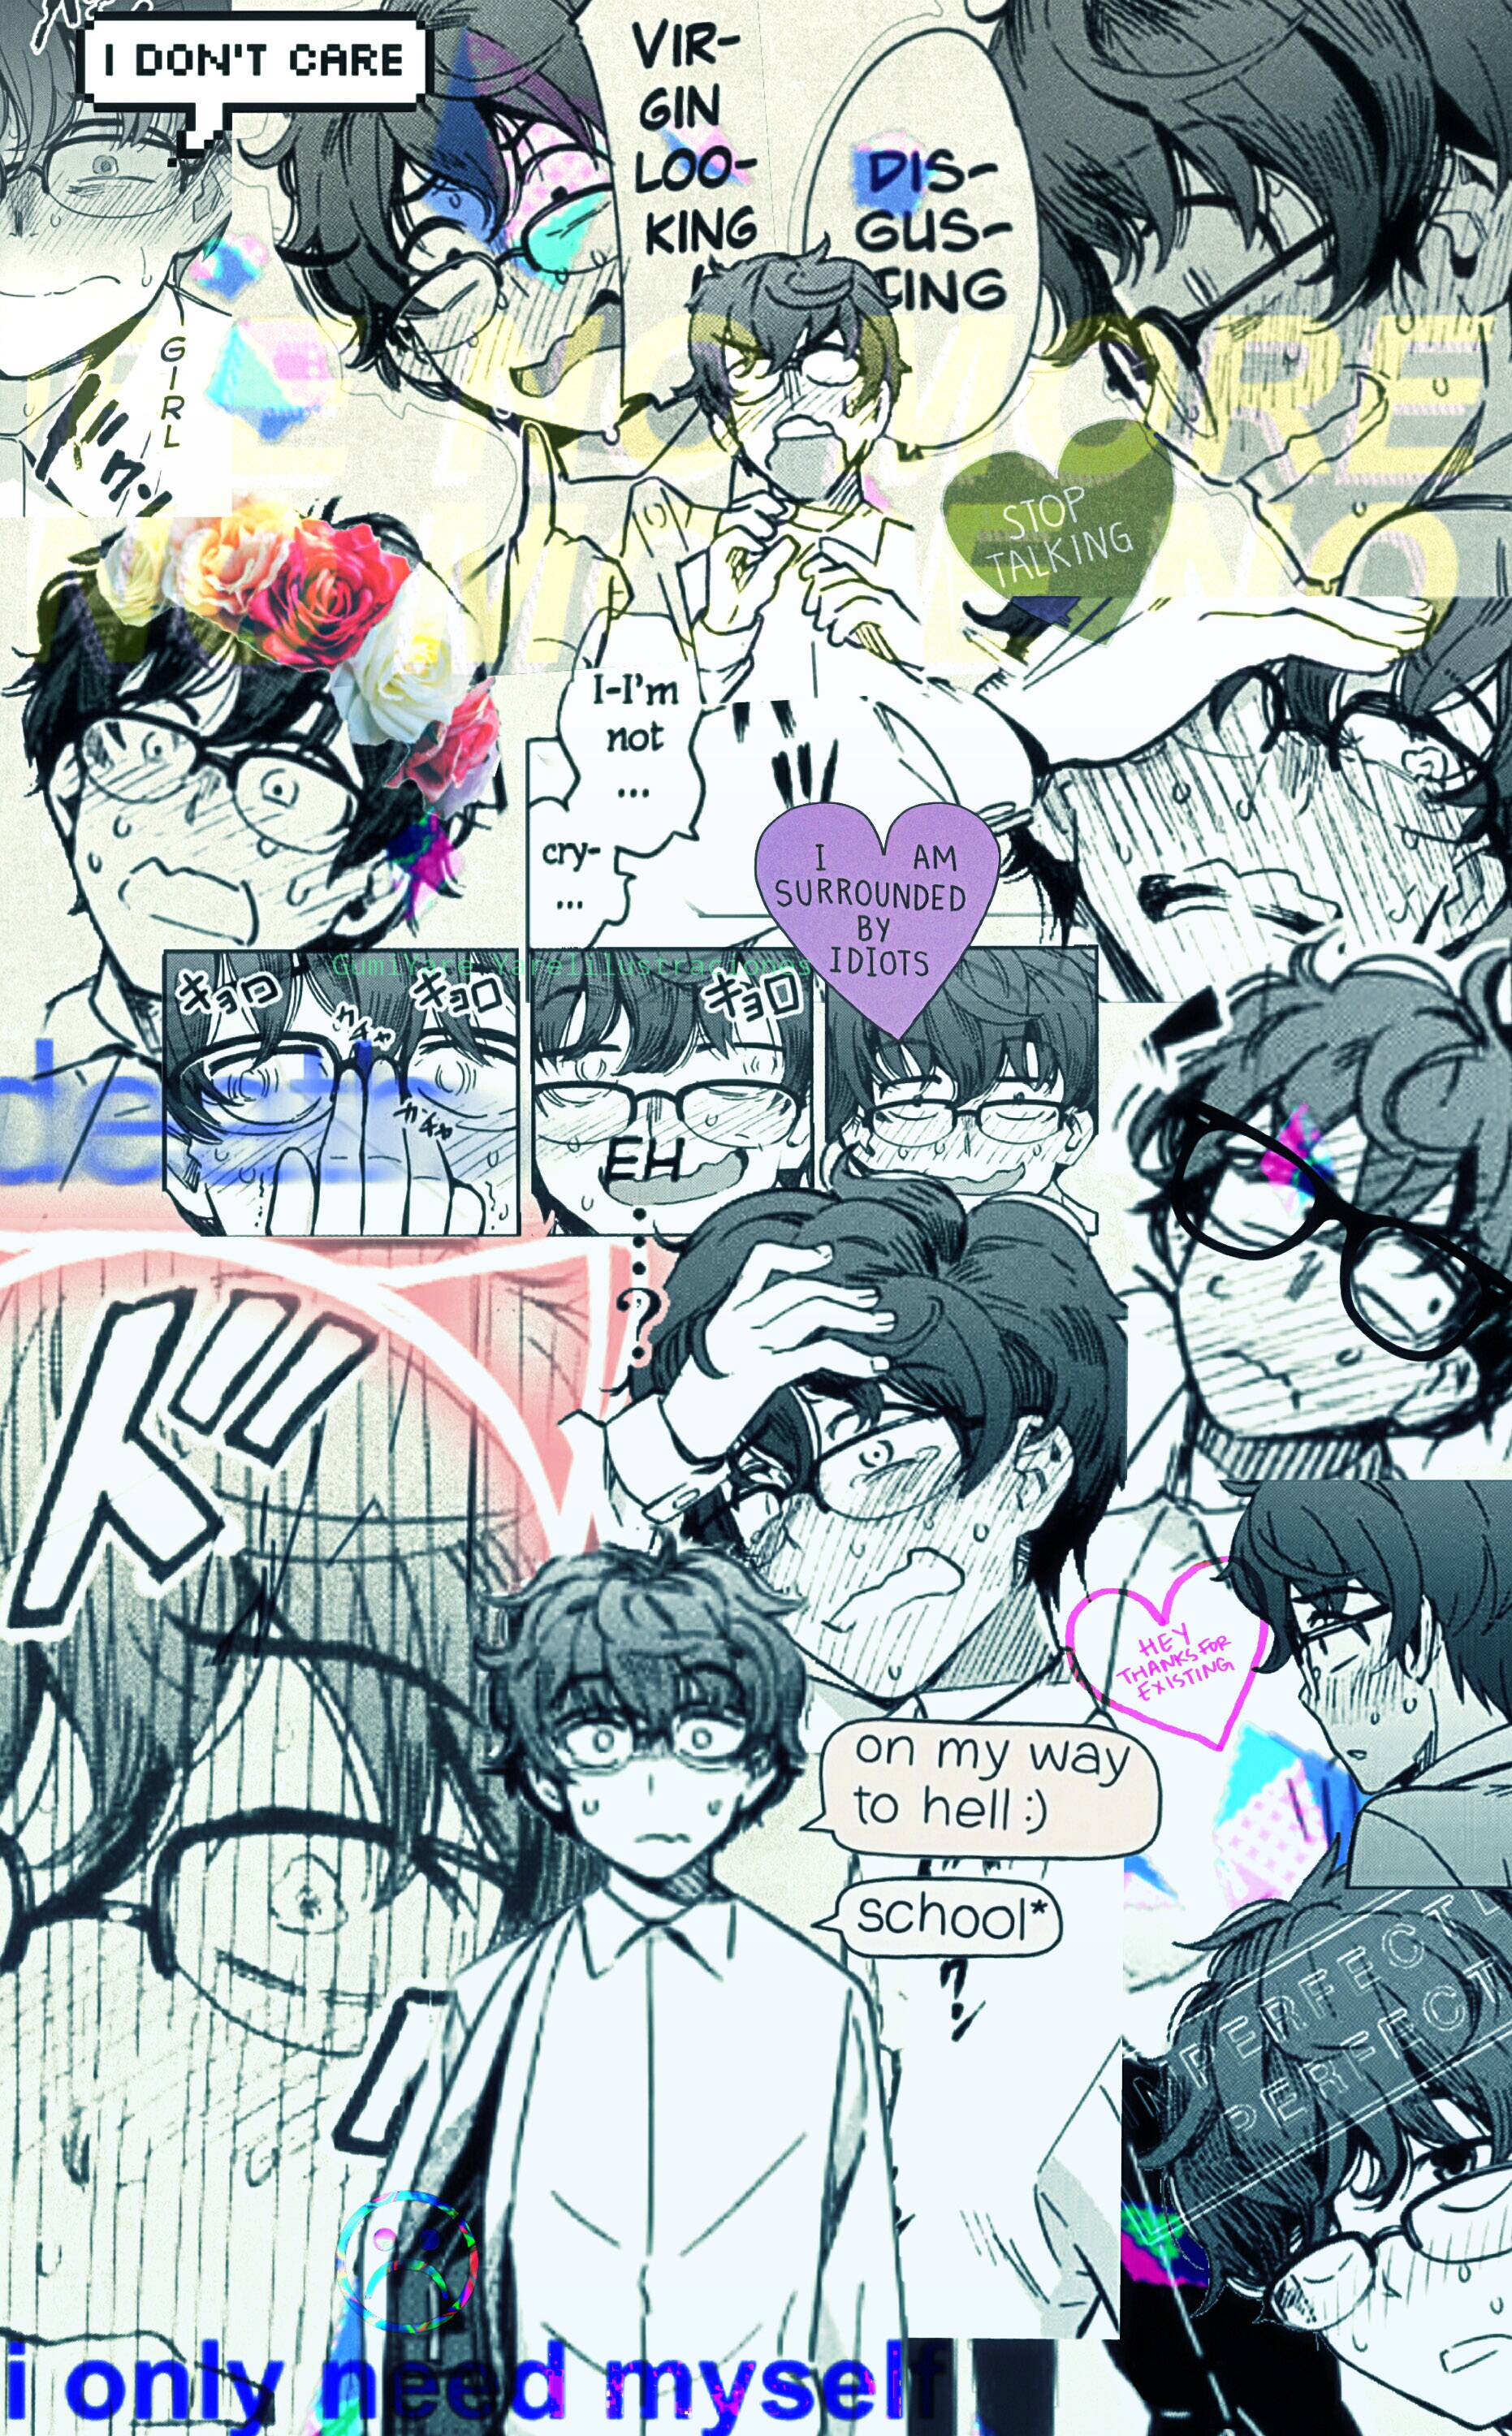 Nagatoro's phone wallpaper